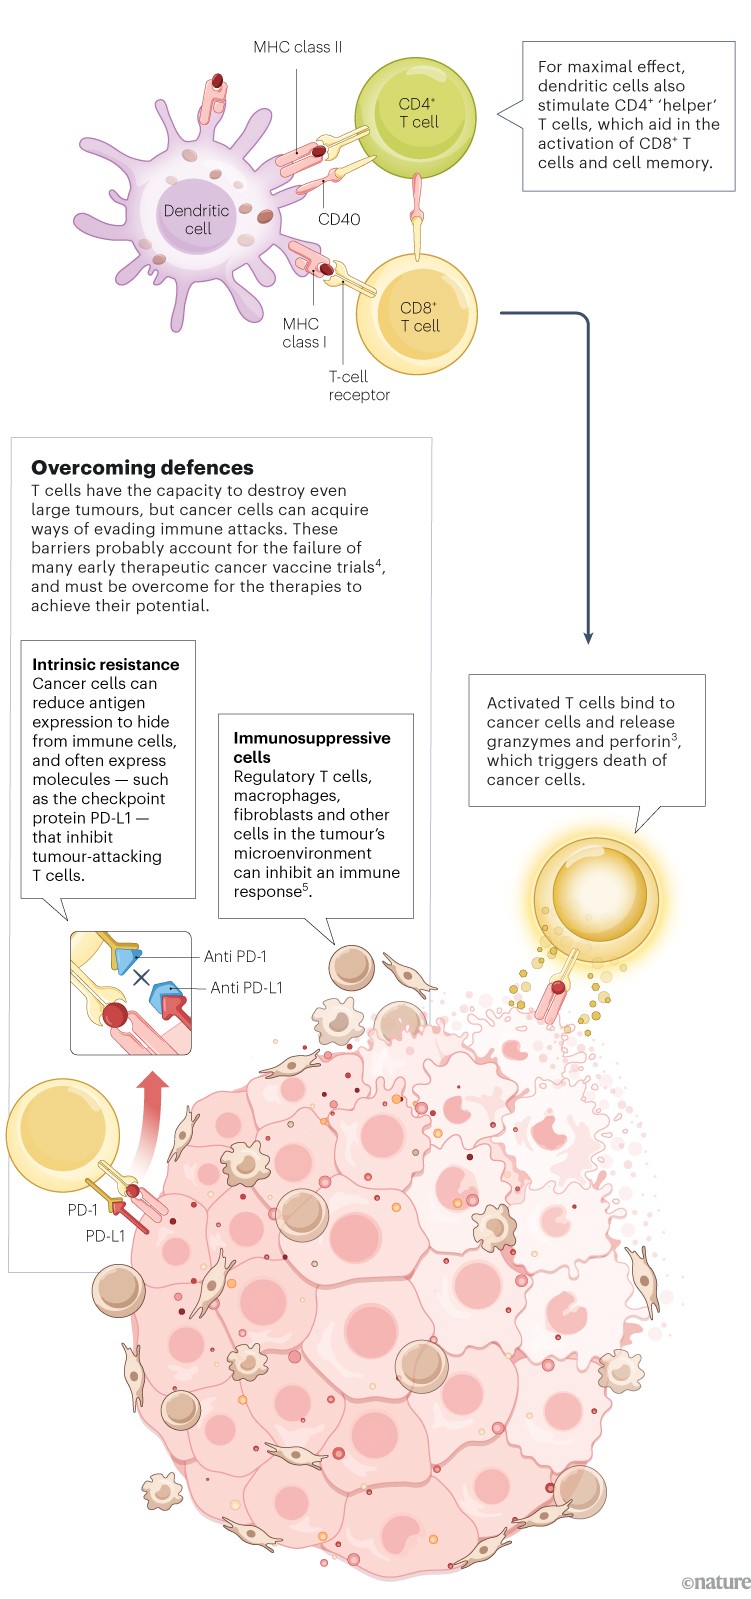 Le cellule dendritiche caricate con antigeni tumorali si legano e attivano le cellule T citotossiche CD8+, che possono quindi sferrare un attacco al tumore.